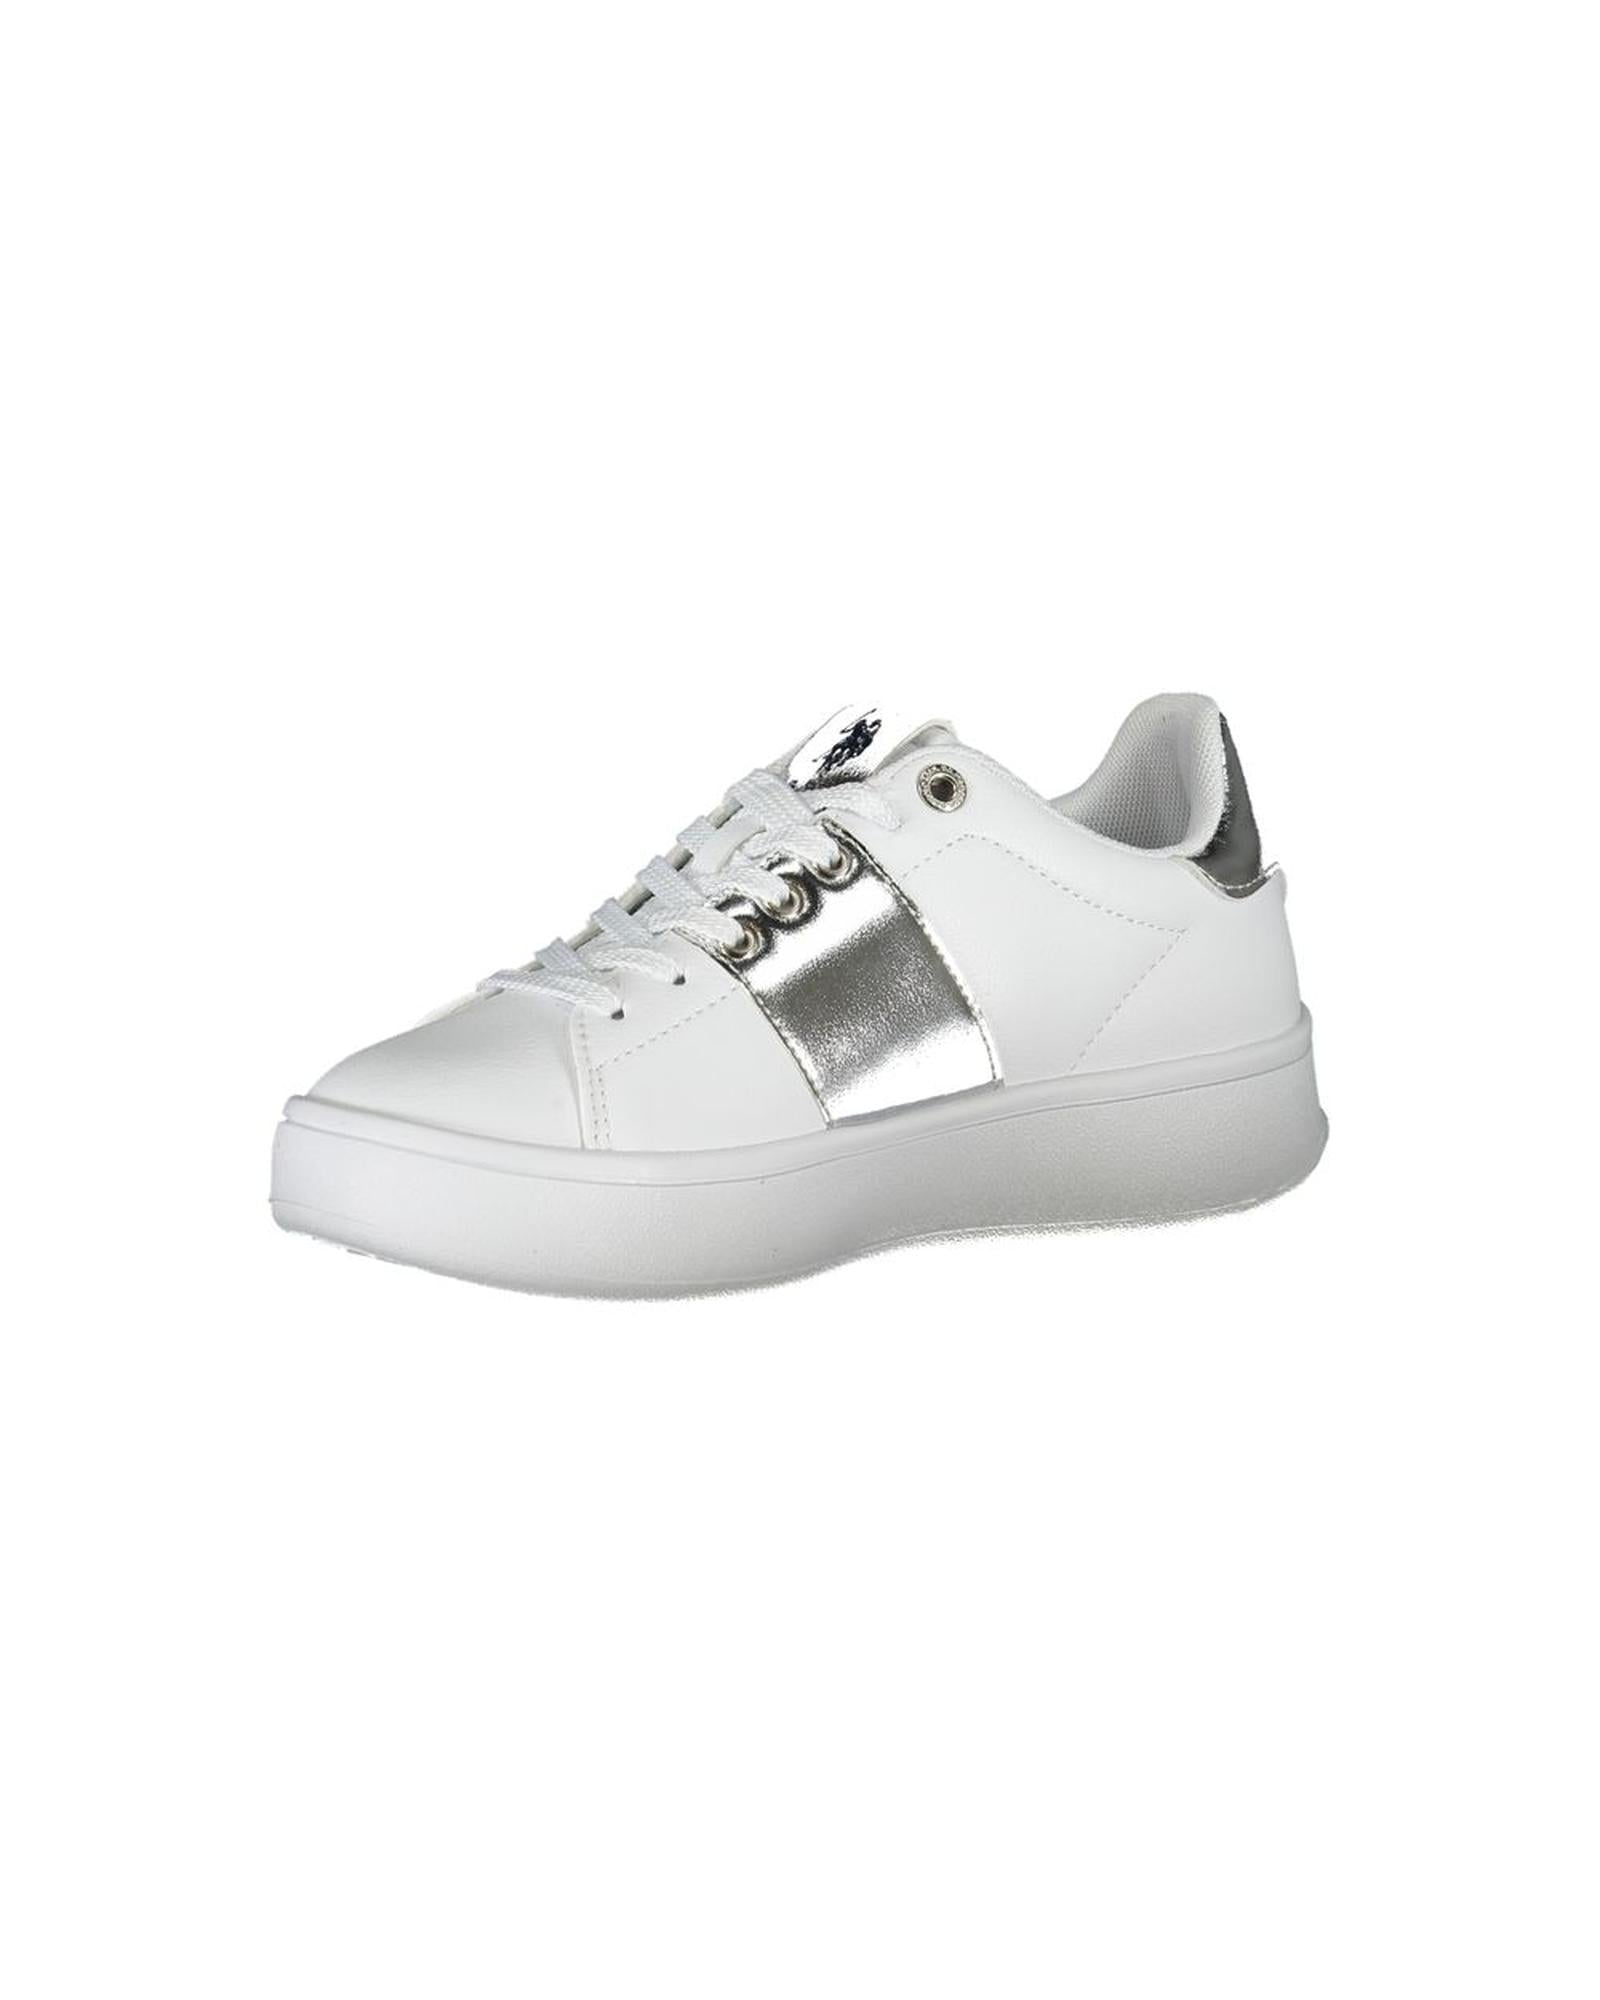 US POLO ASSN Women's White Polyester Sneaker - 38 EU